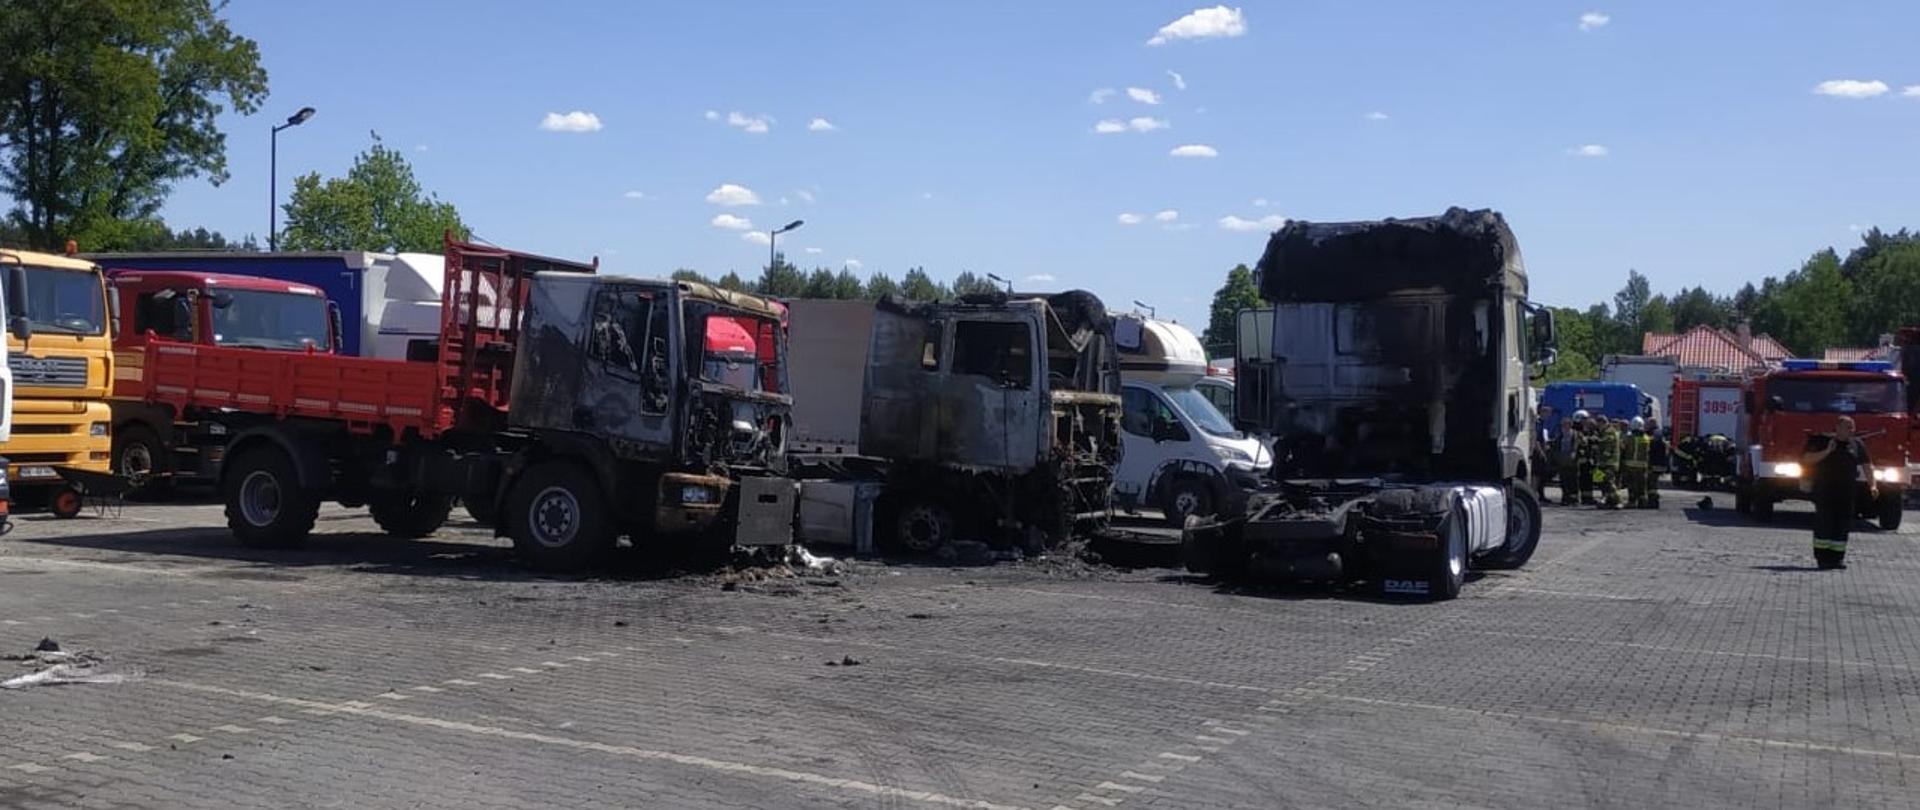 Zdjęcie przedstawia plac na terenie komisu samochodowego oraz trzy samochody ciężarowe, które uległy spaleniu. Po prawej stronie, w głębi widać samochód pożarniczy, a z lewej zaparkowane inne pojazdy.